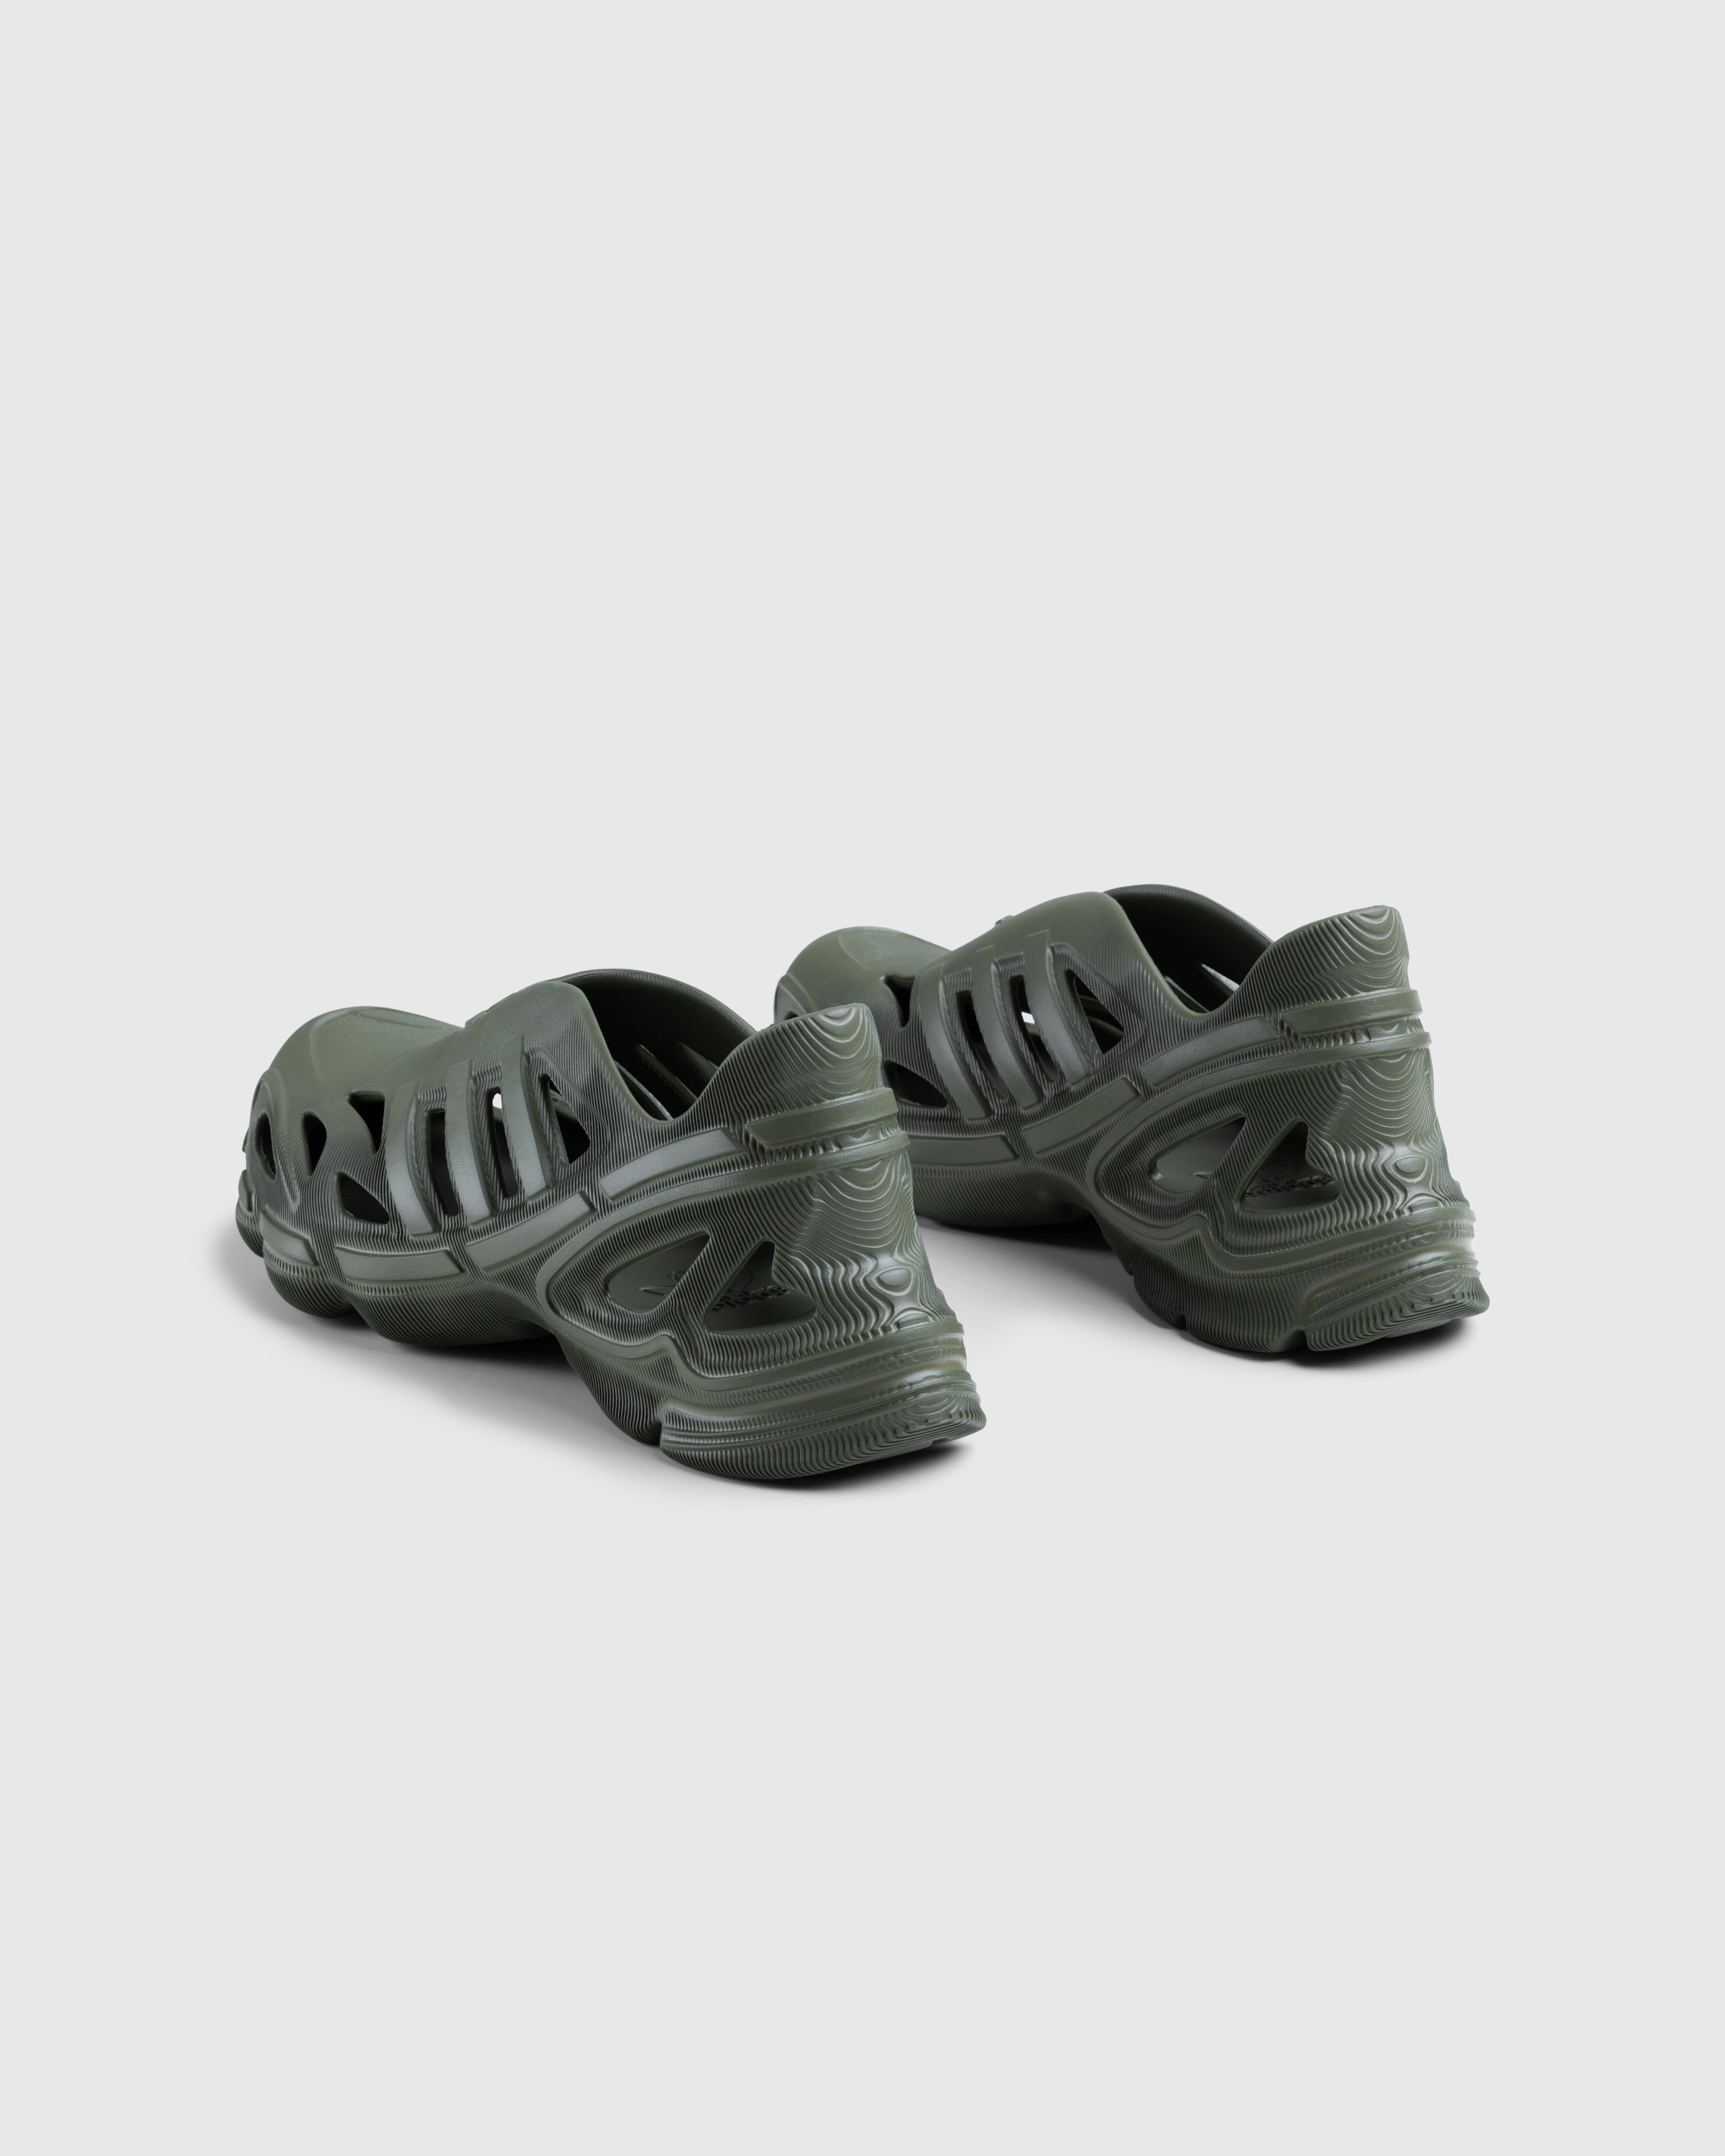 Adidas - Adifom Supernova Focus Olive - Footwear - Green - Image 4